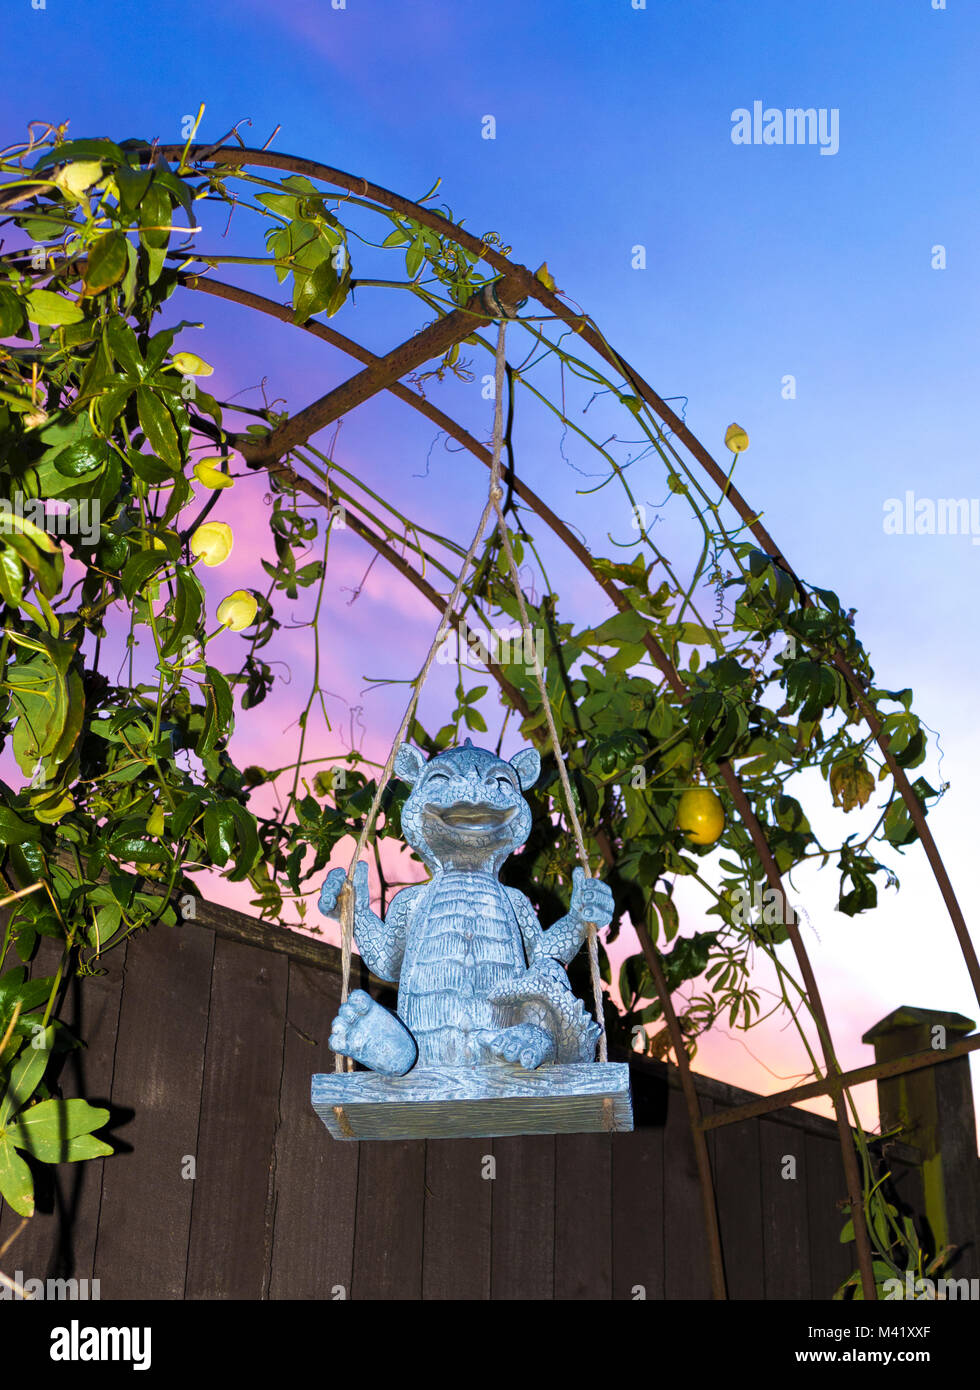 Nett, lächelnd Drachen garten Ornament auf einer Schaukel, vor einen Bogen mit wachsenden Passionsblume / Passiflora, gegen einen schönen Sonnenaufgang Sonnenaufgang. UK. Stockfoto